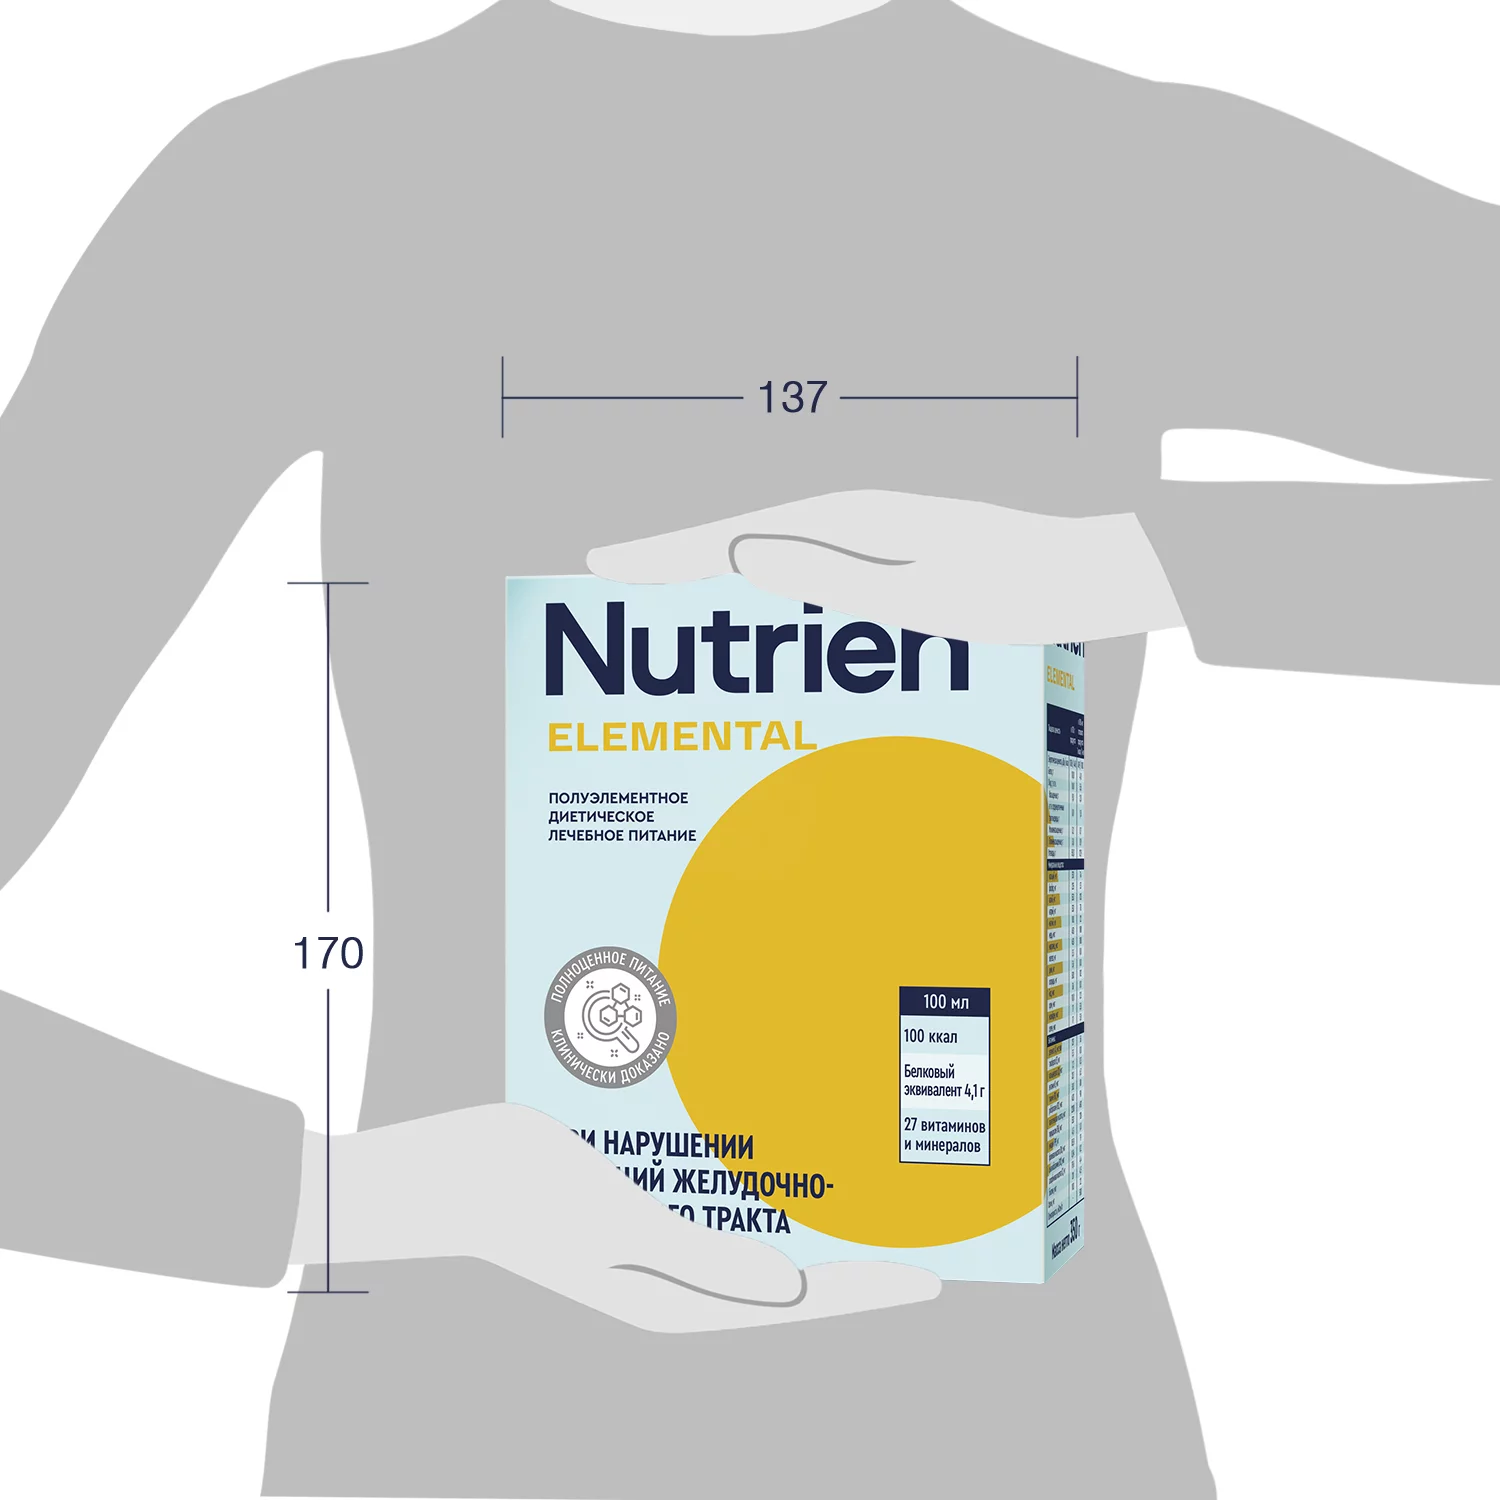 Nutrien Elemental - 8